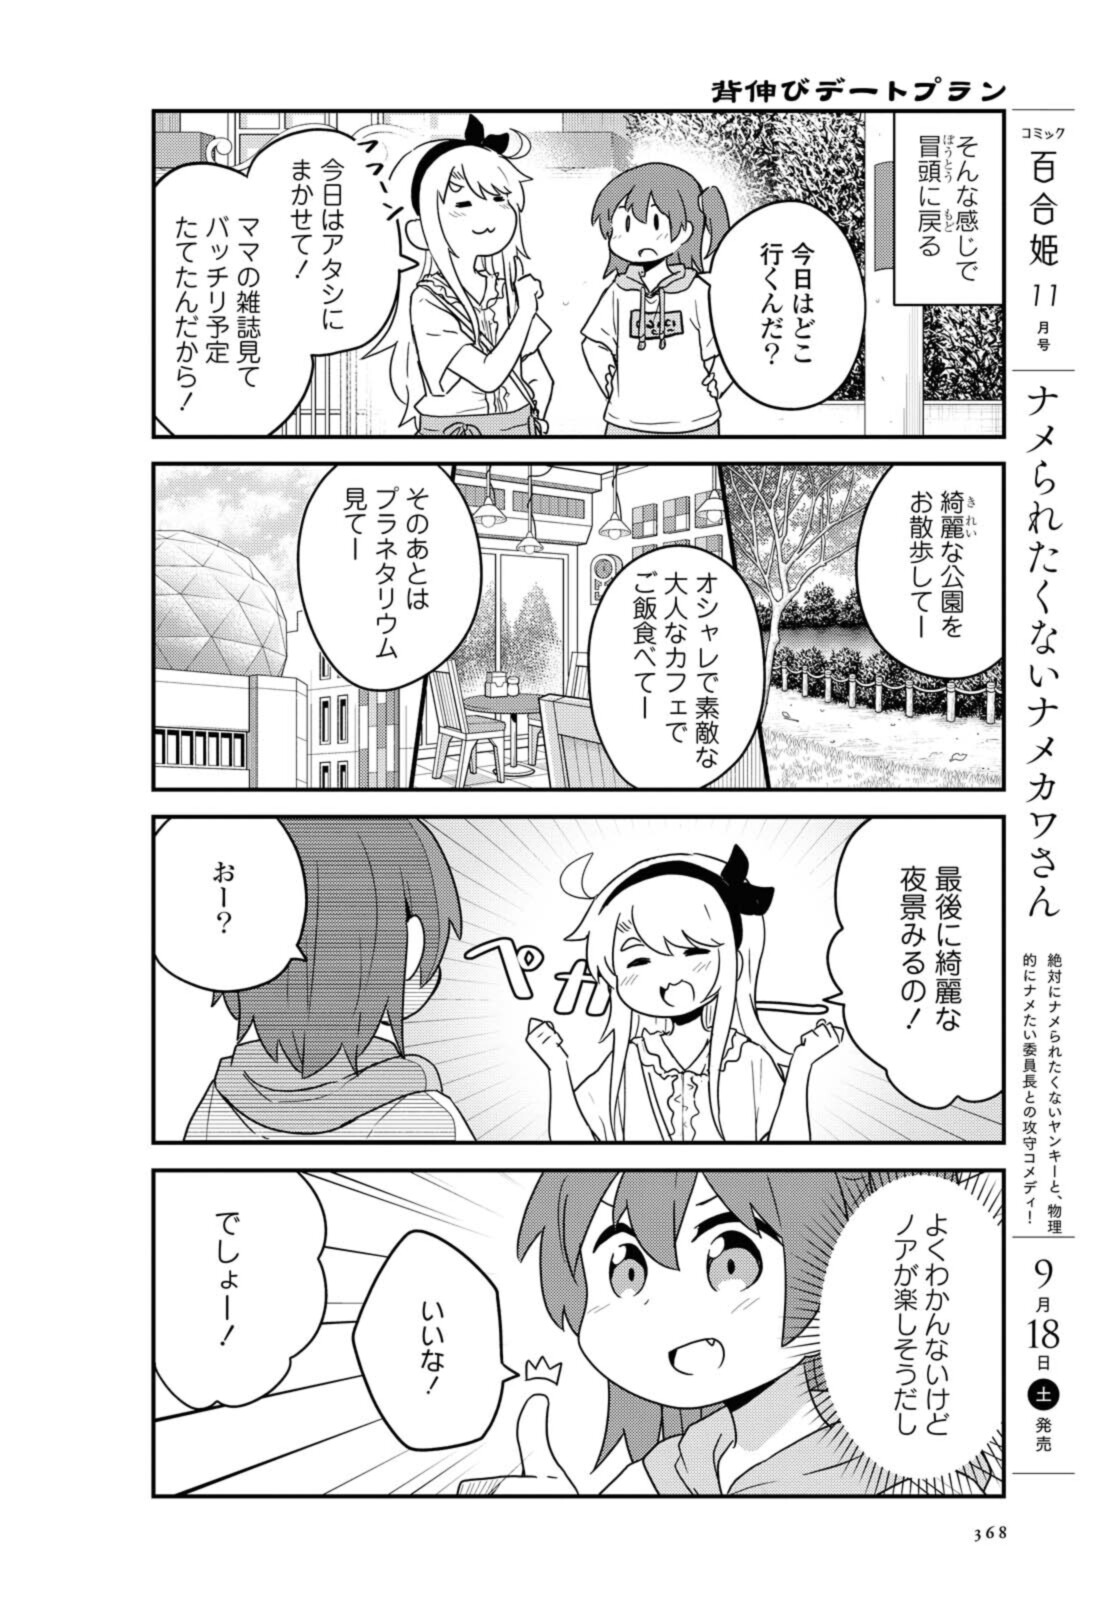 Watashi ni Tenshi ga Maiorita! - Chapter 86.1 - Page 8